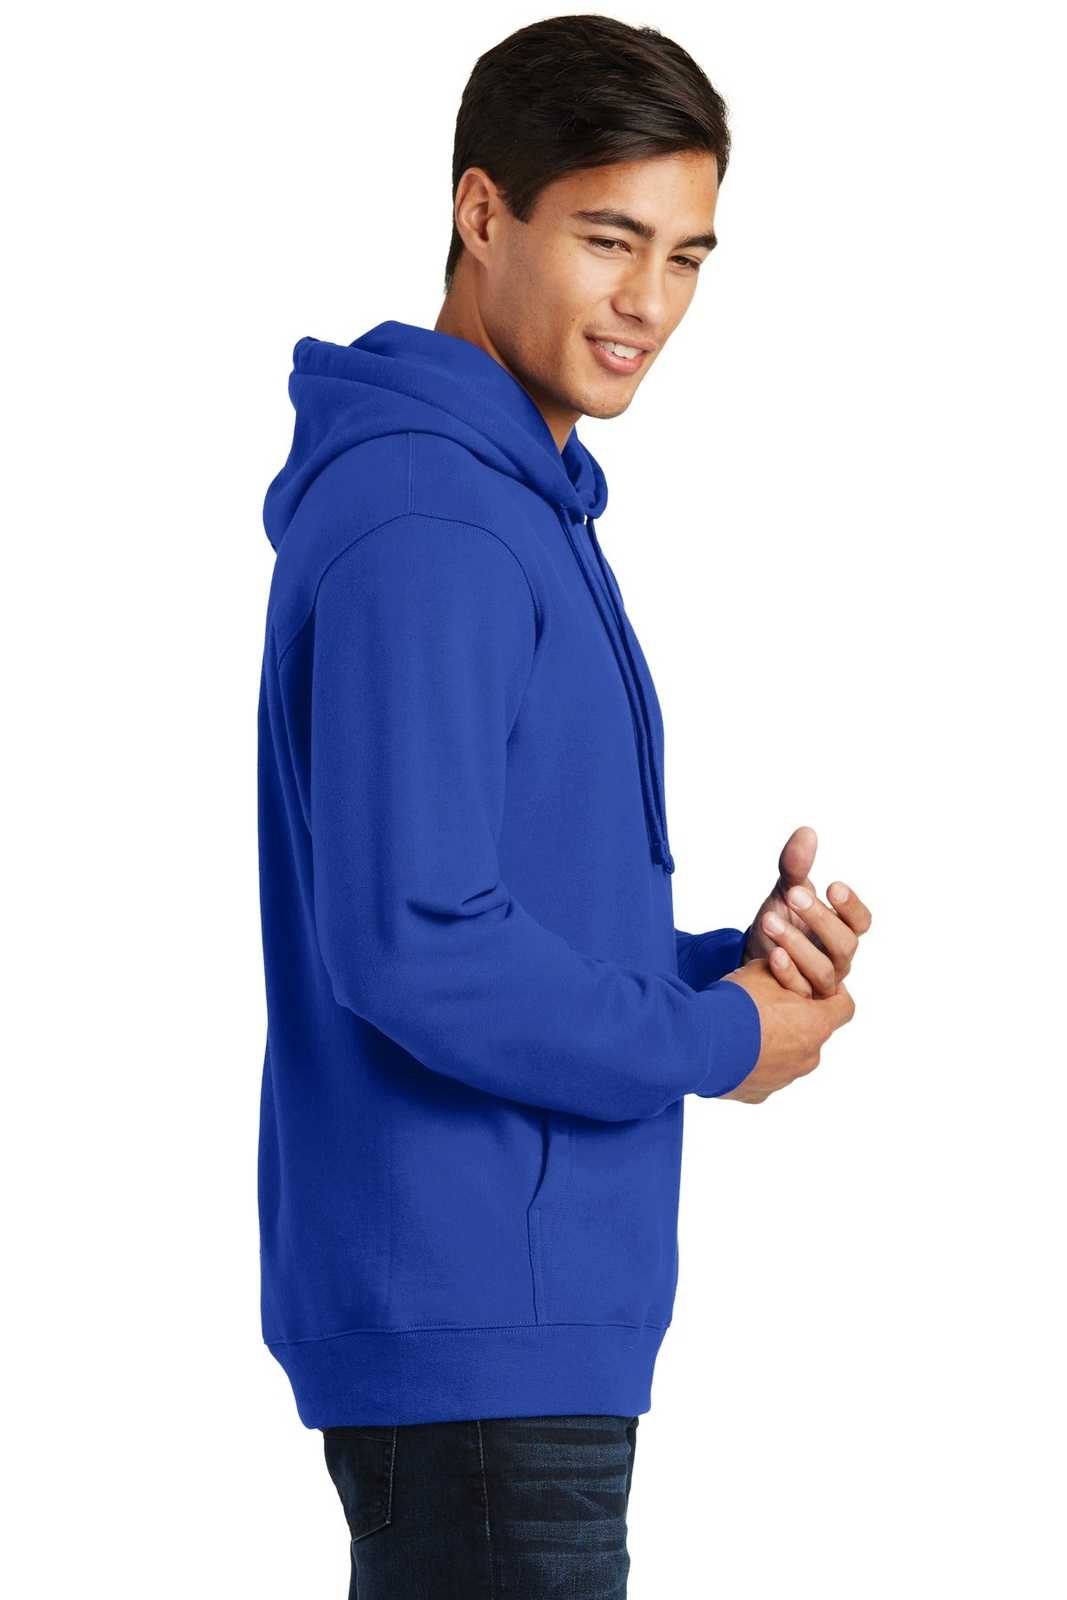 Port &amp; Company PC850H Fan Favorite Fleece Pullover Hooded Sweatshirt - True Royal - HIT a Double - 3